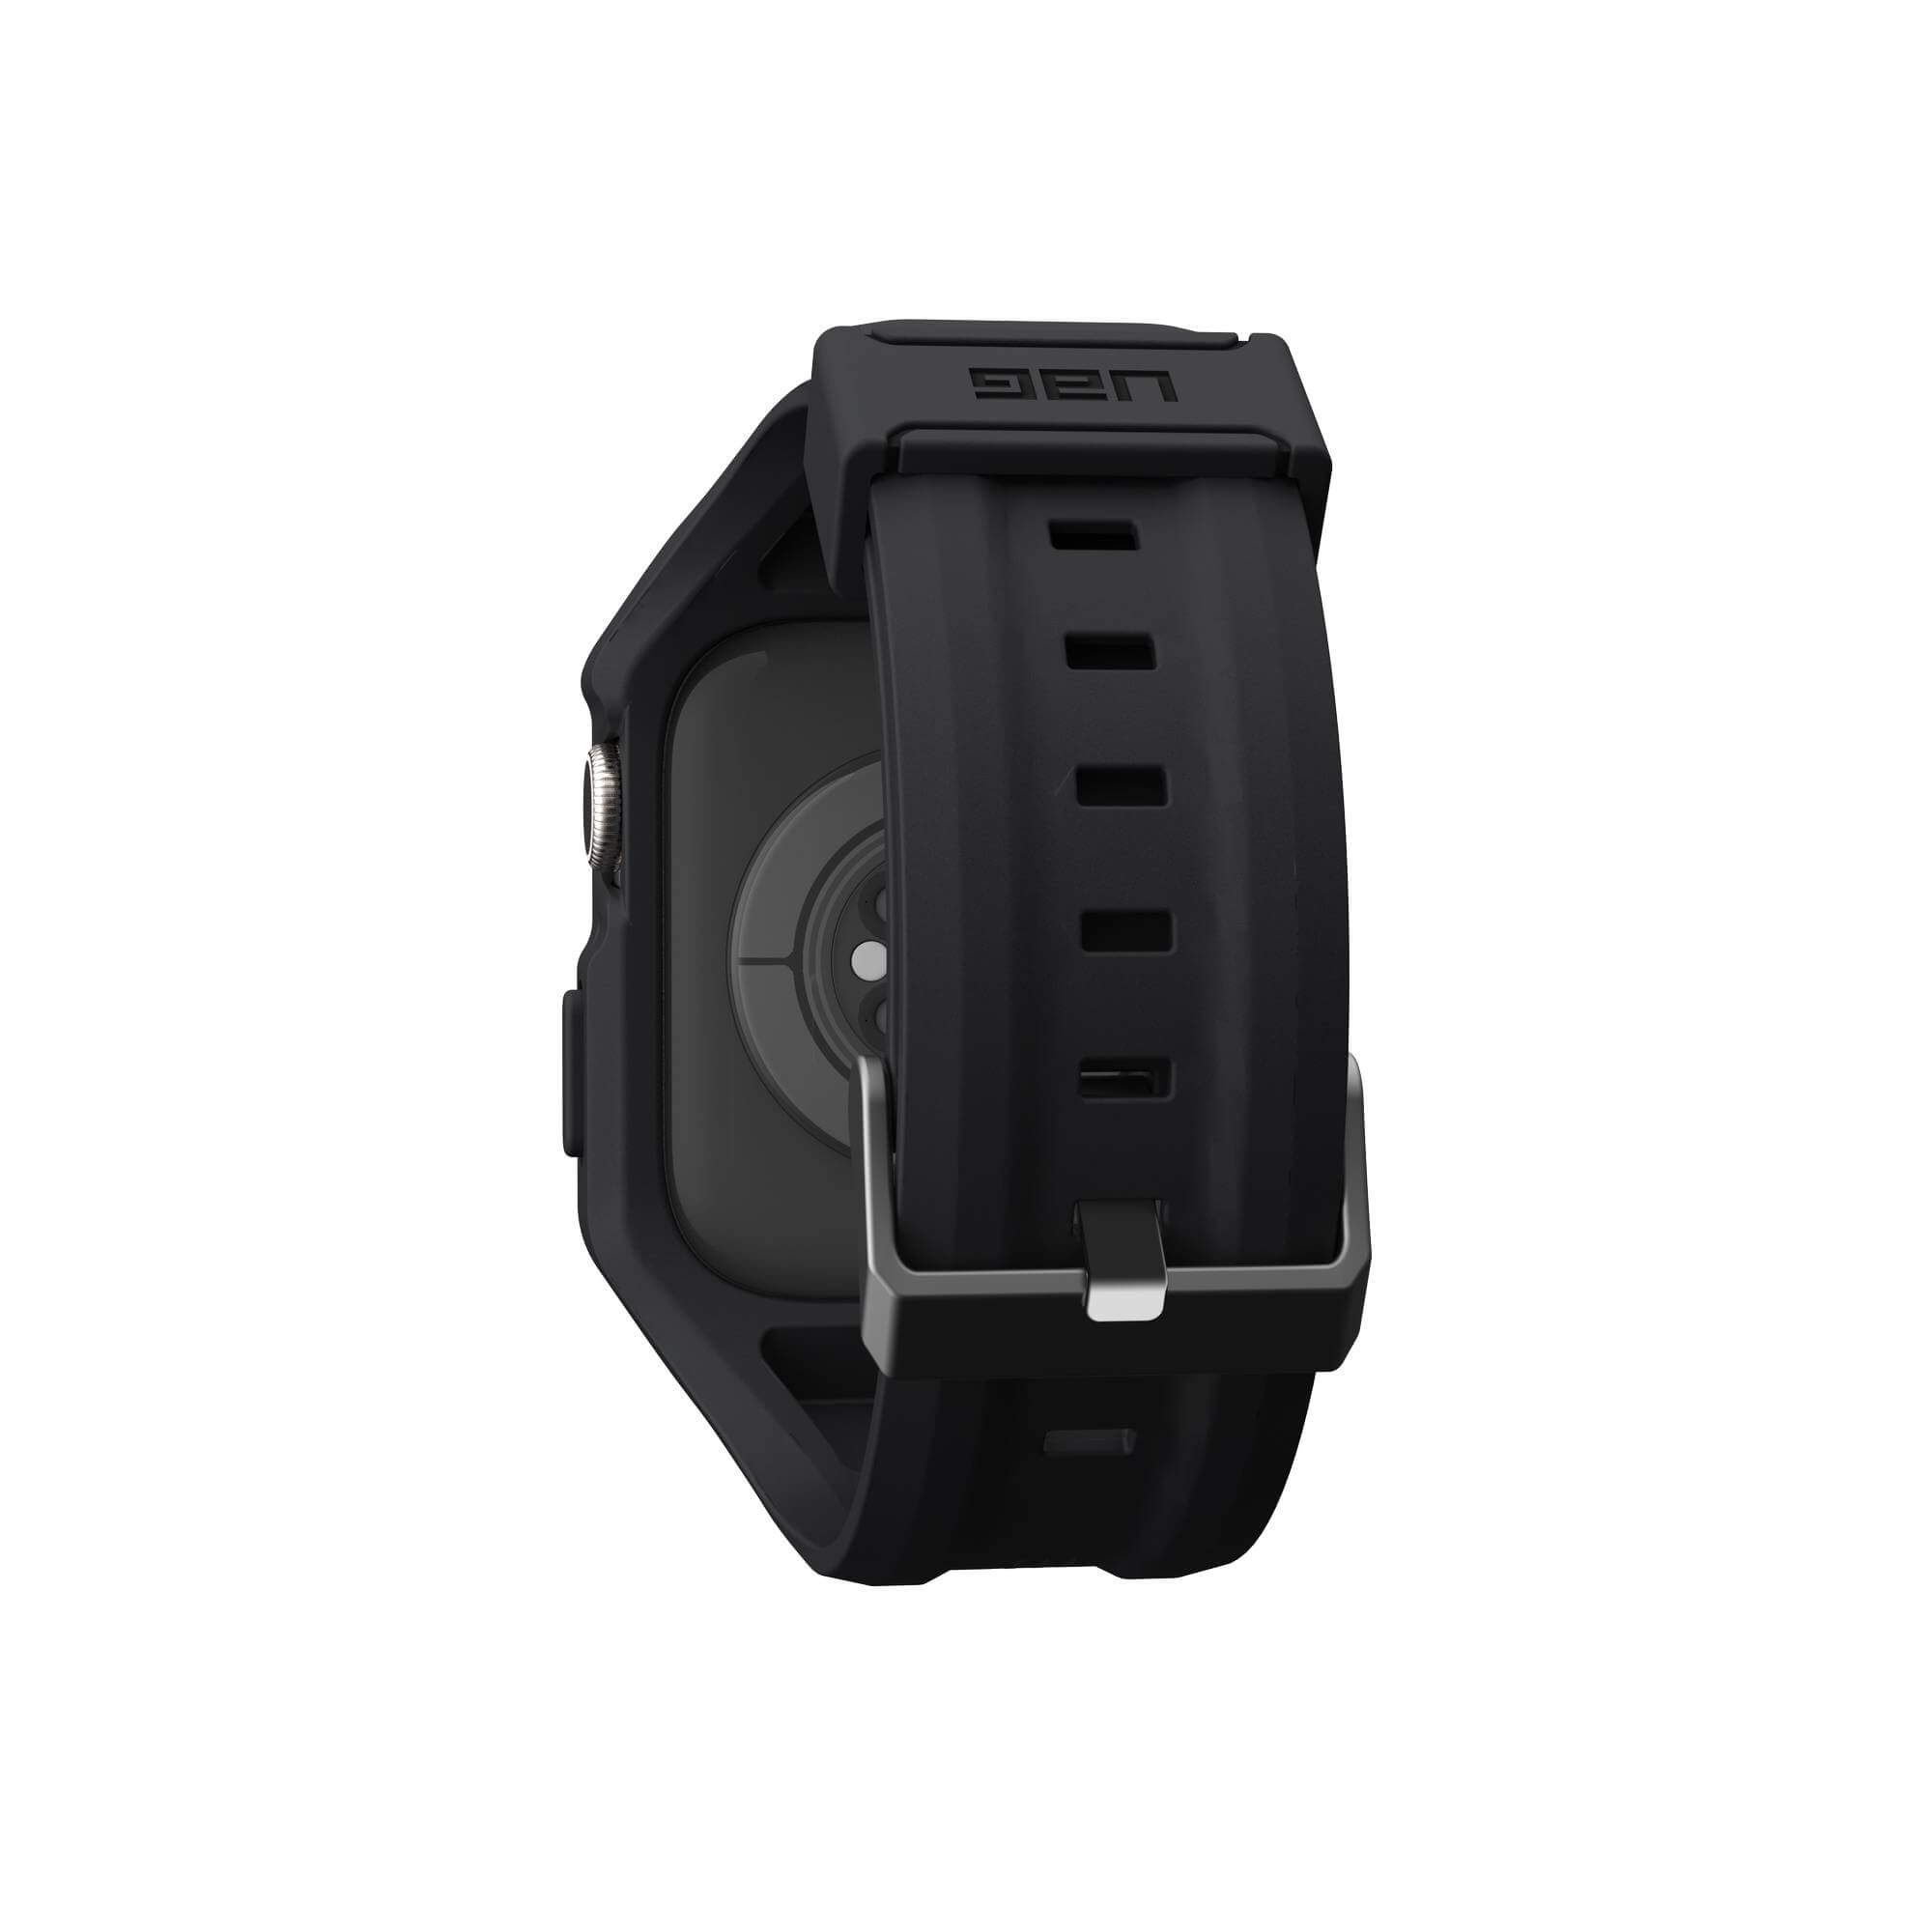 URBAN ARMOR GEAR Scout Ersatzarmband, 45mm, + Watch 8 Case), schwarz Apple, 7) (Series (Strap 